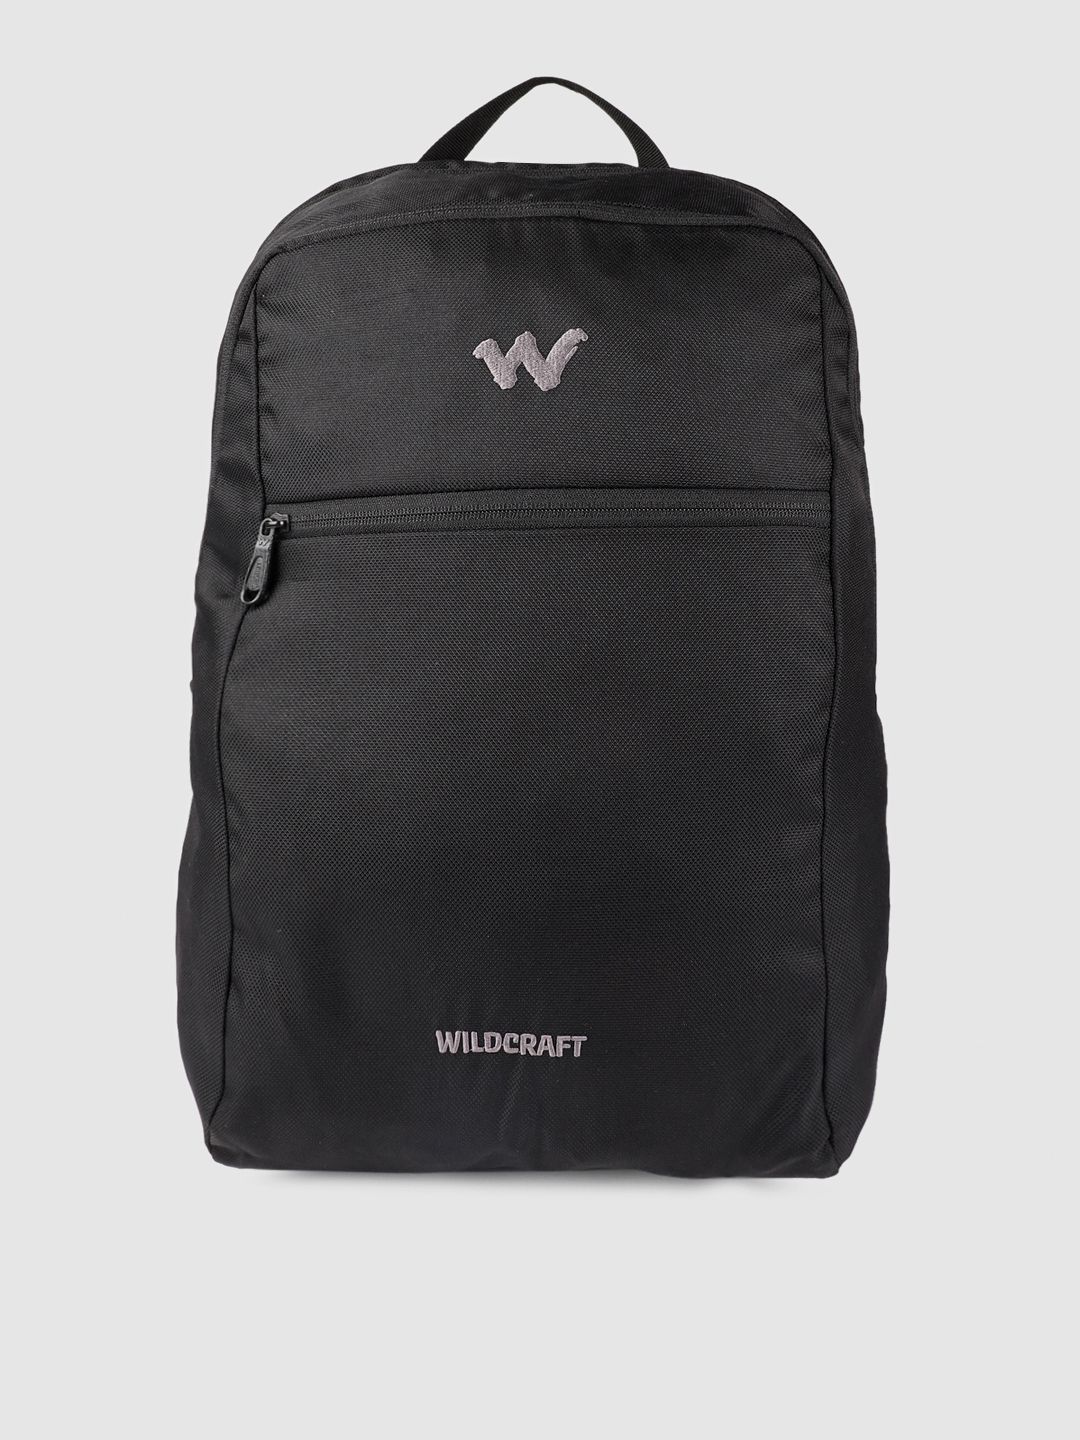 Wildcraft Unisex Black My Sleek 2 Backpack Price in India